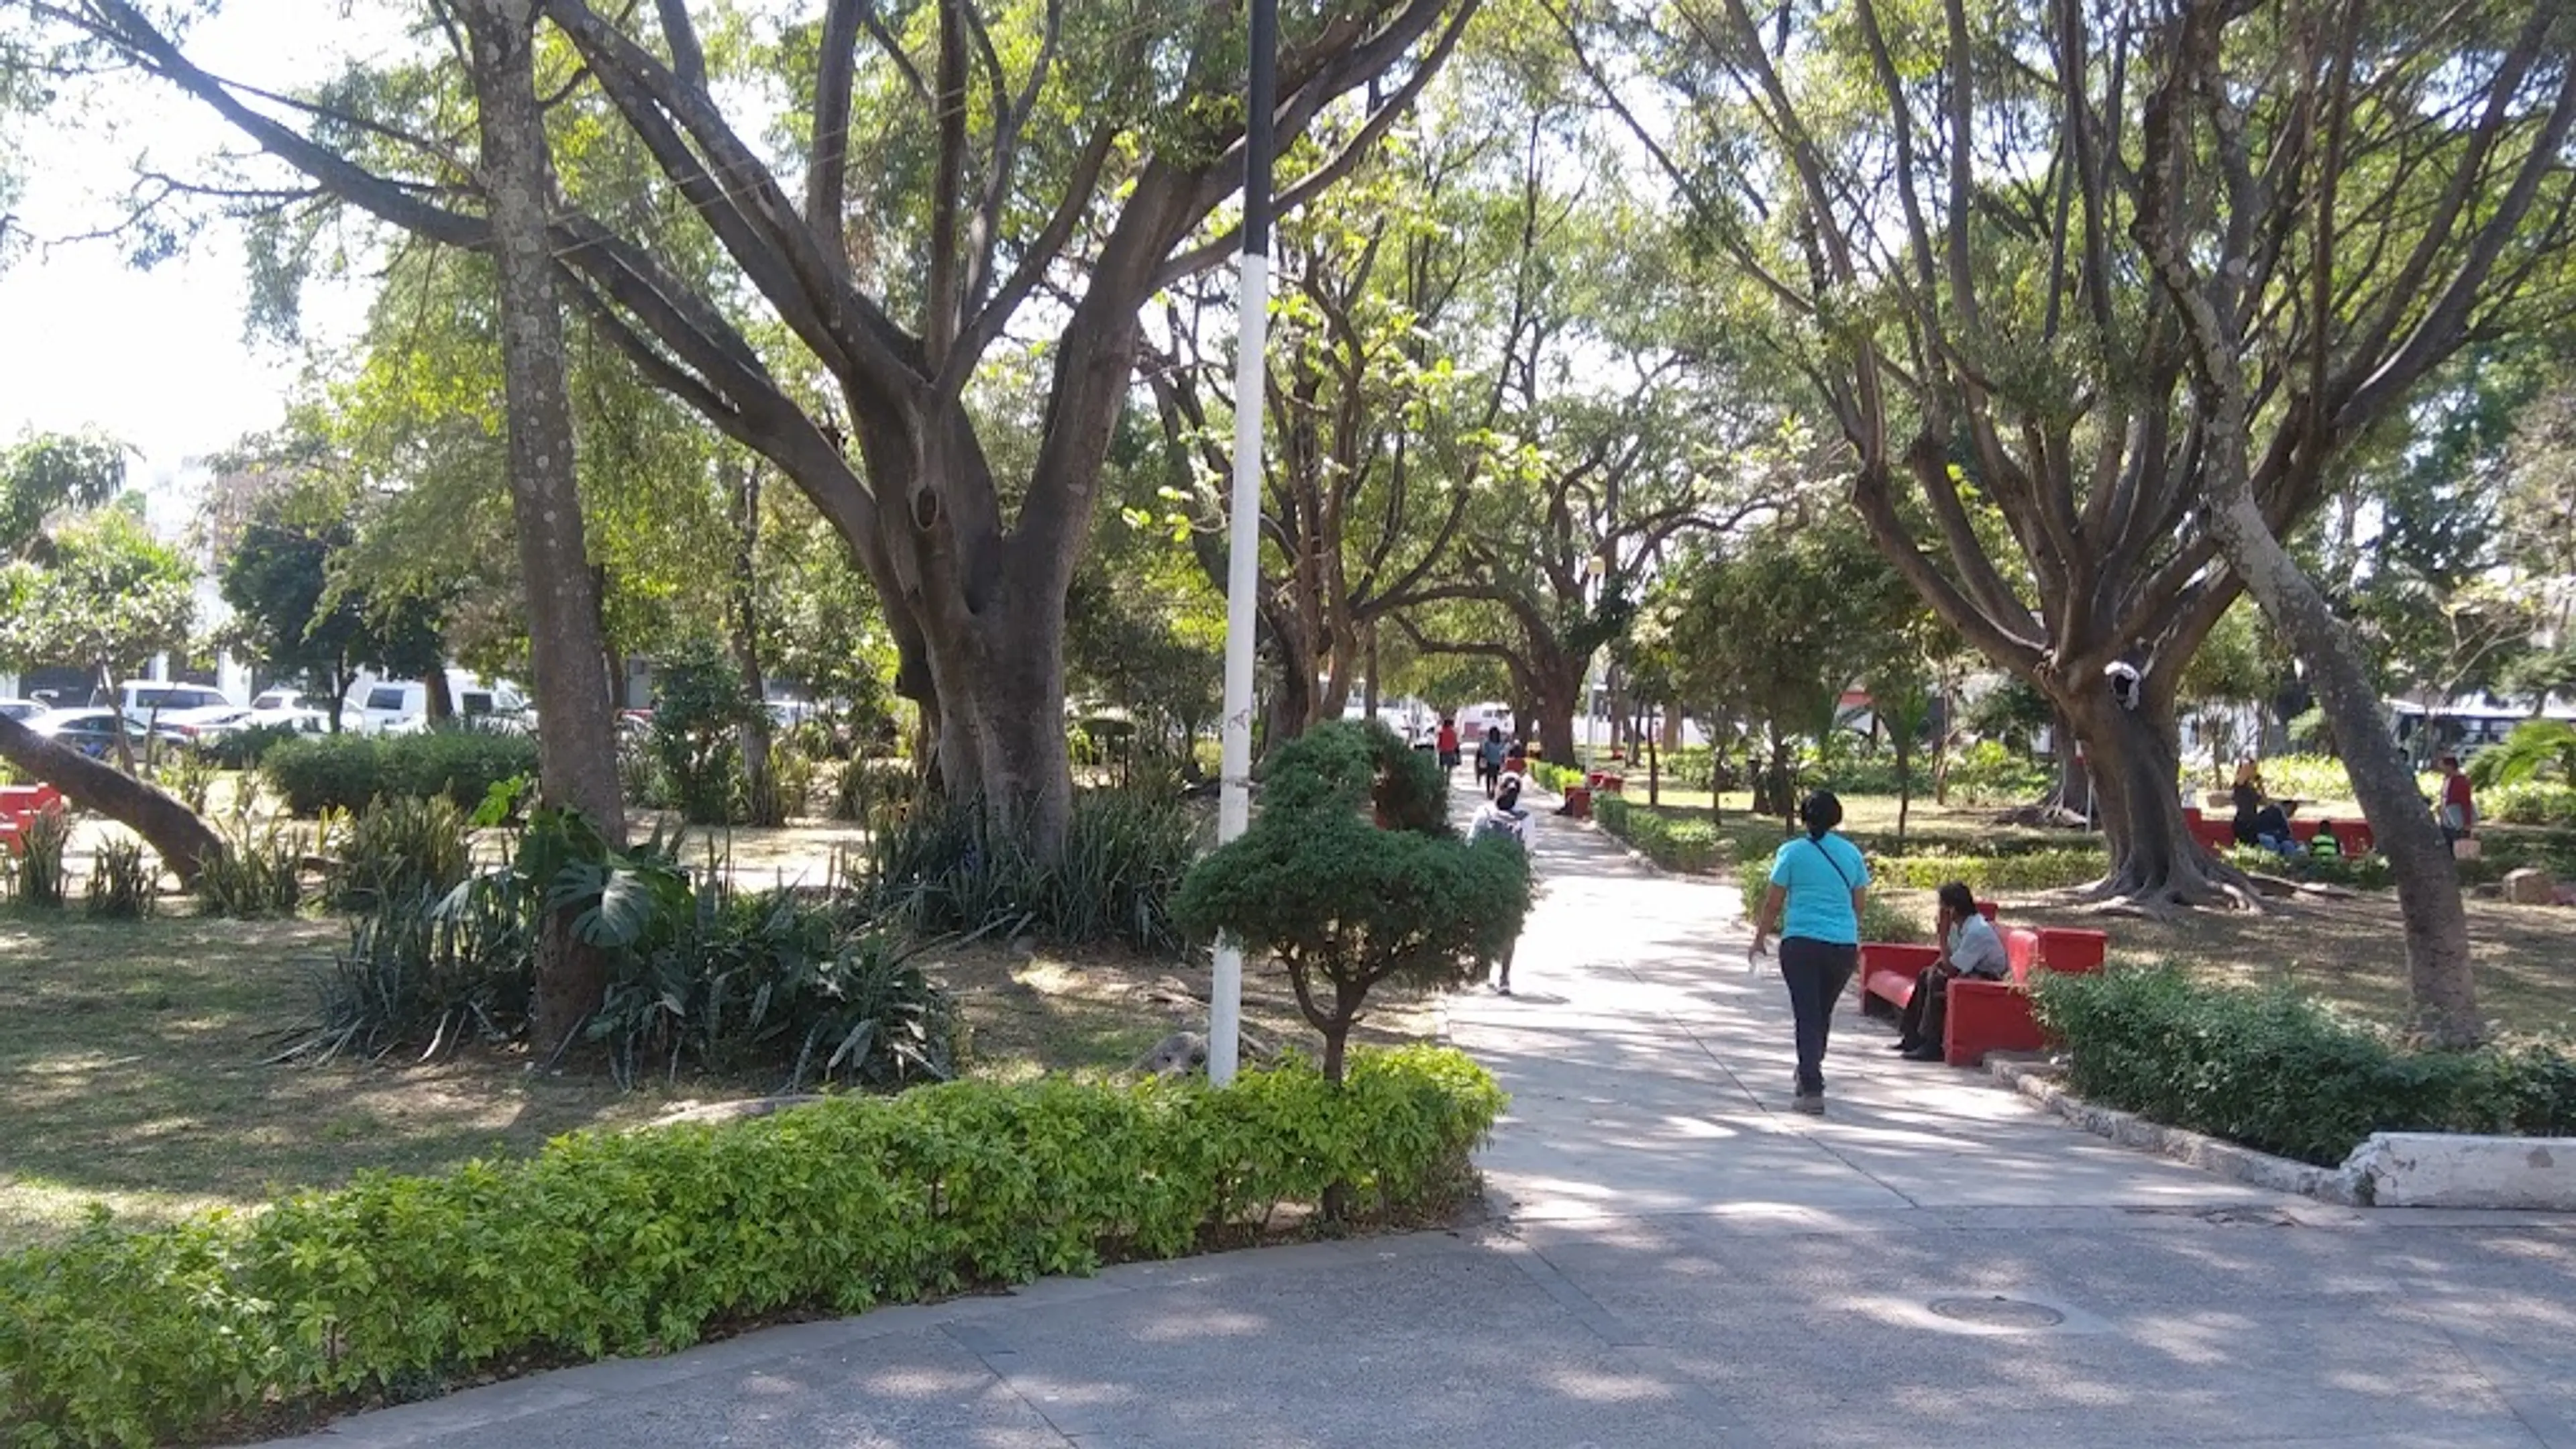 Guadalajara Botanical Garden